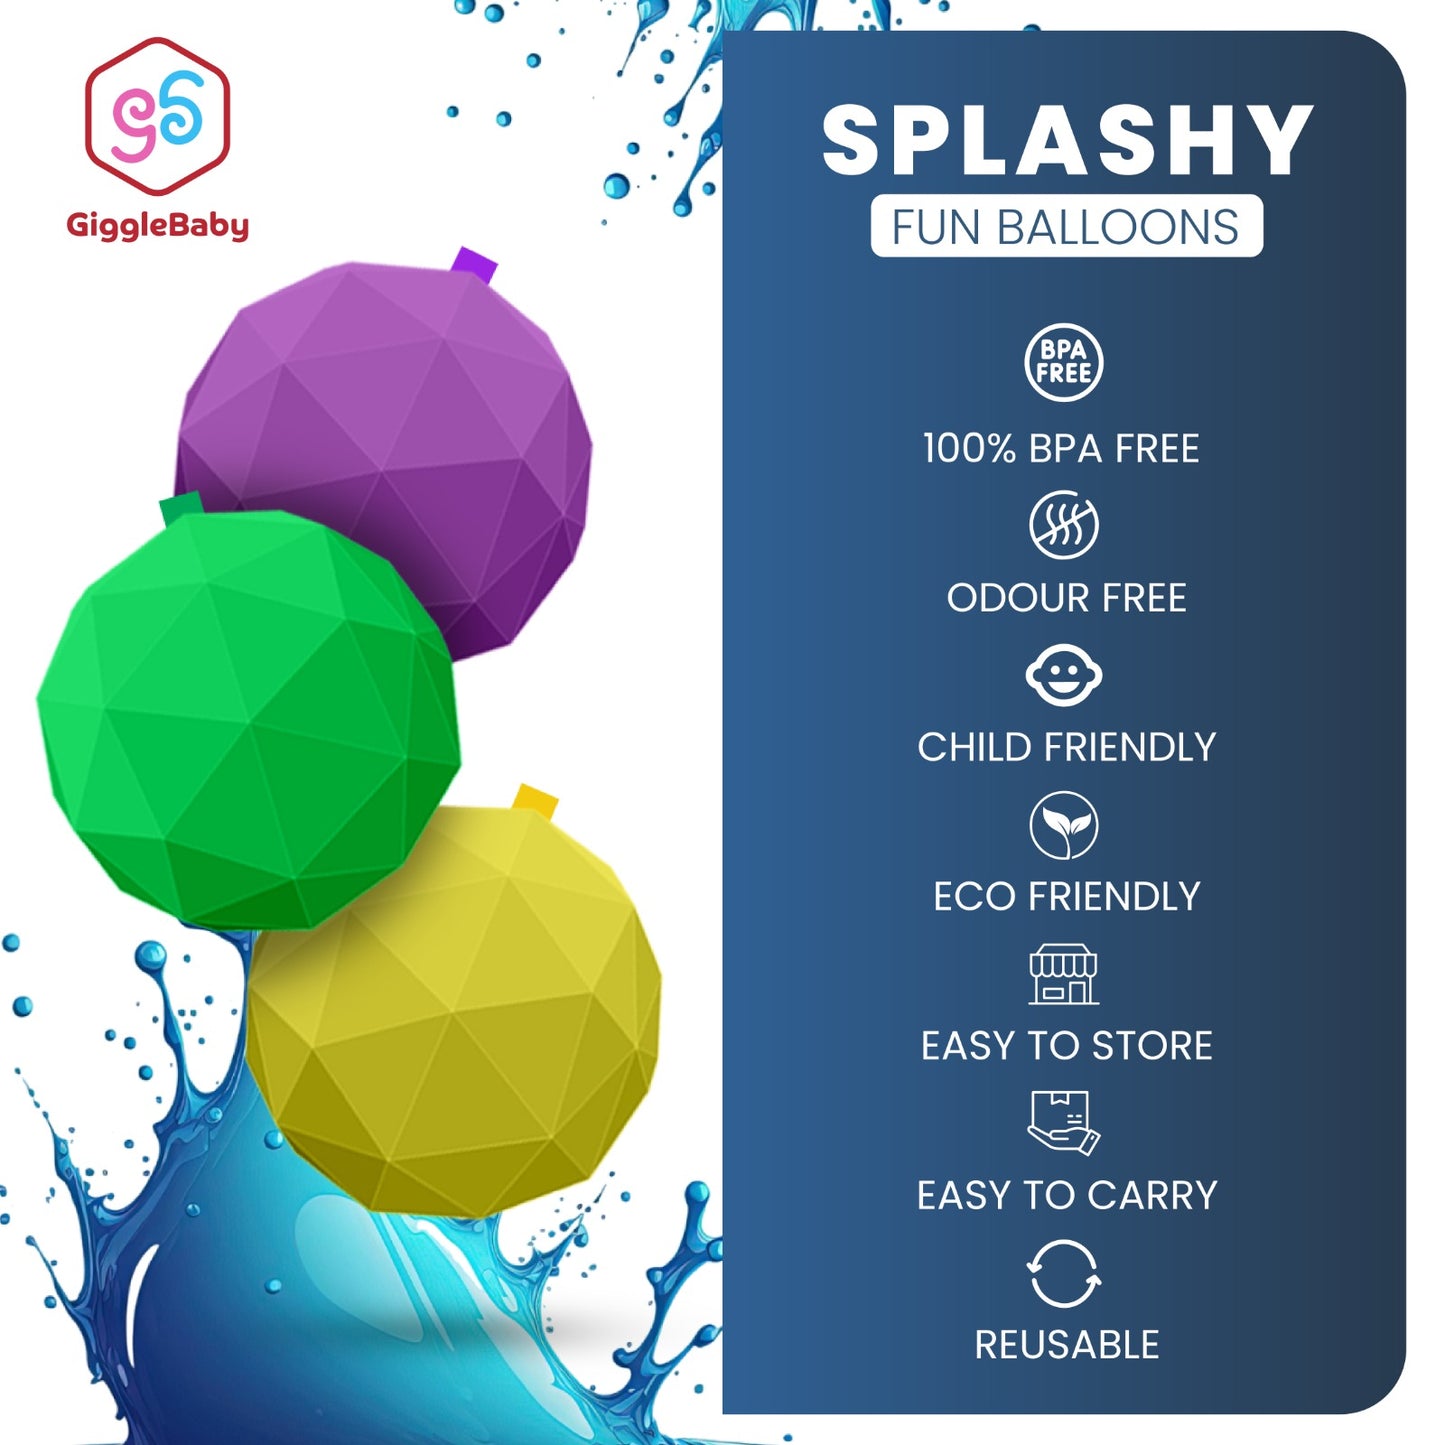 Features Of Splashy Balloons